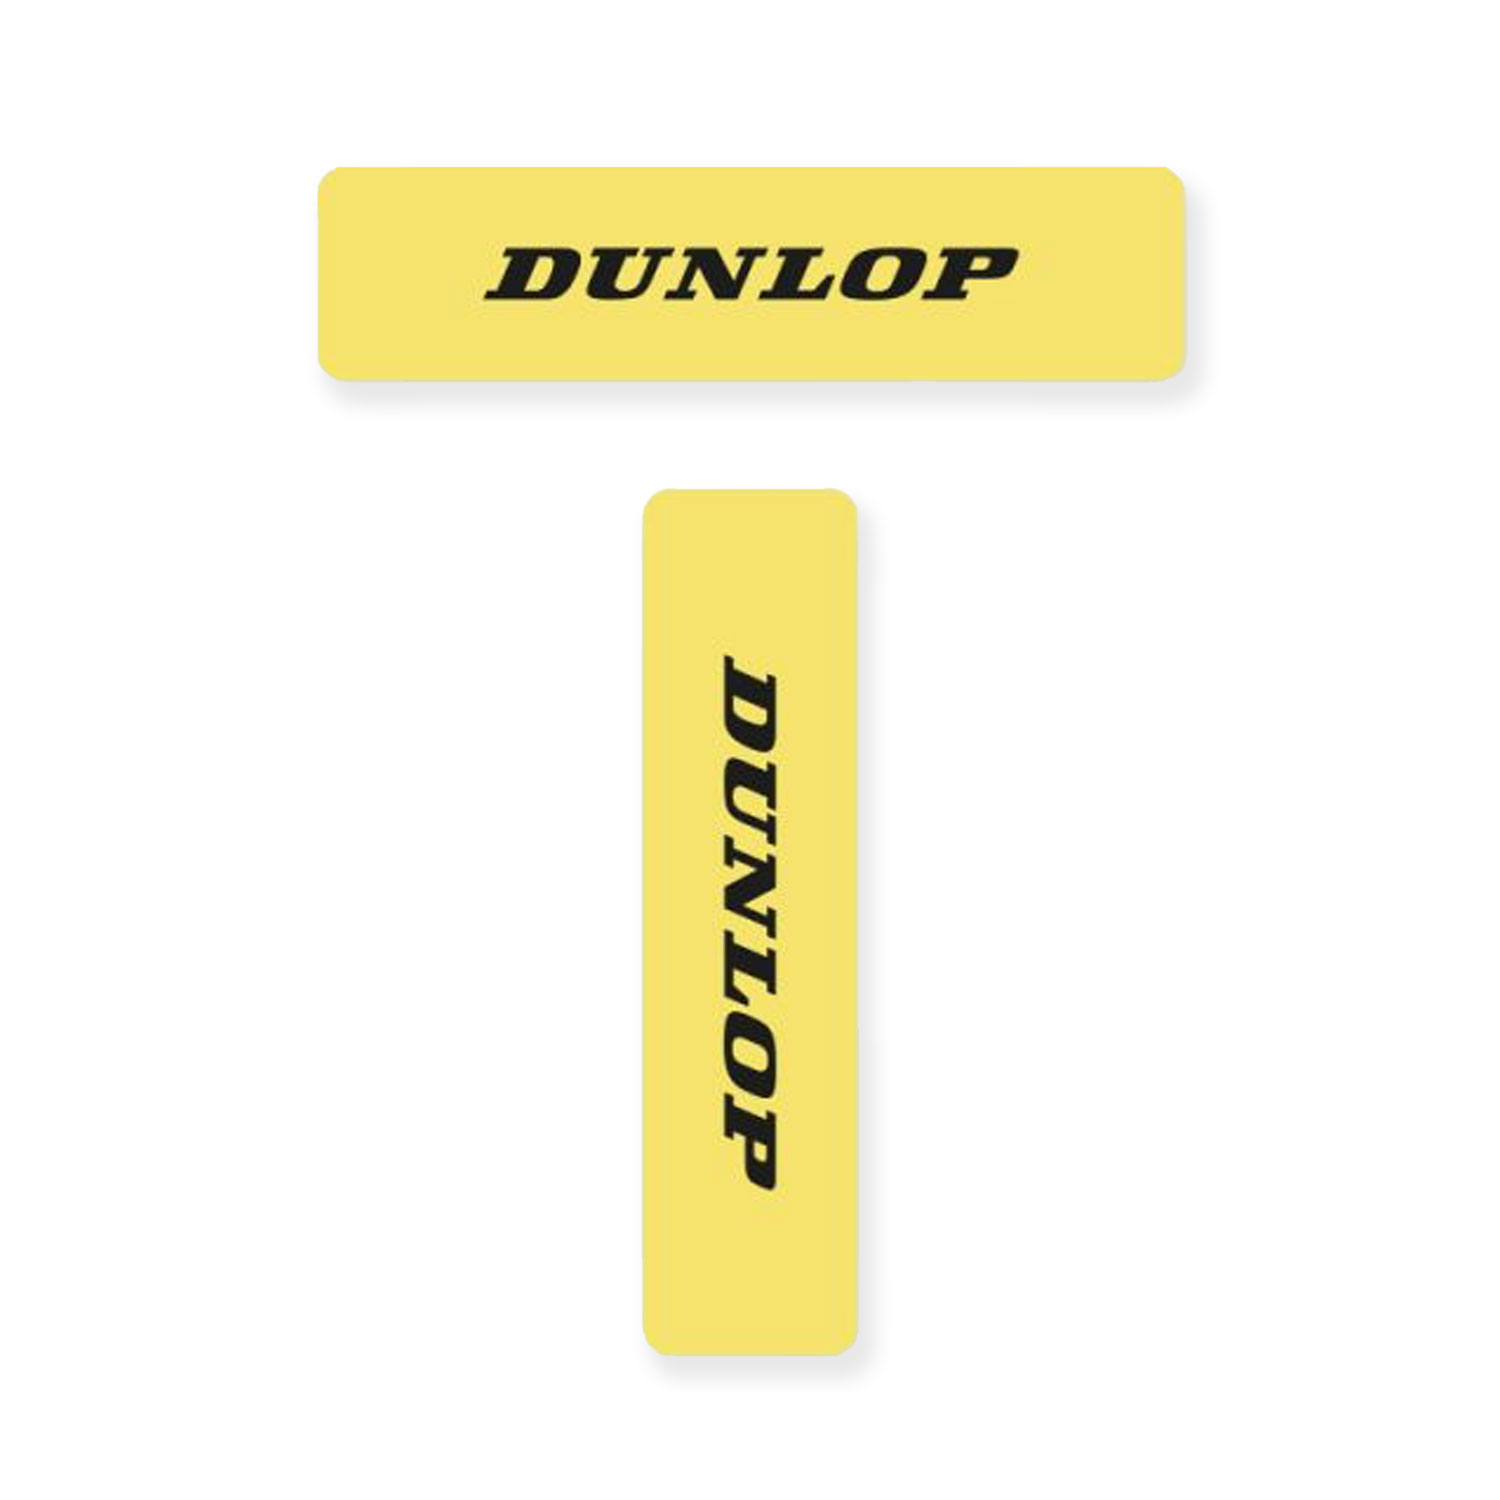 Dunlop Court Linee - Yellow